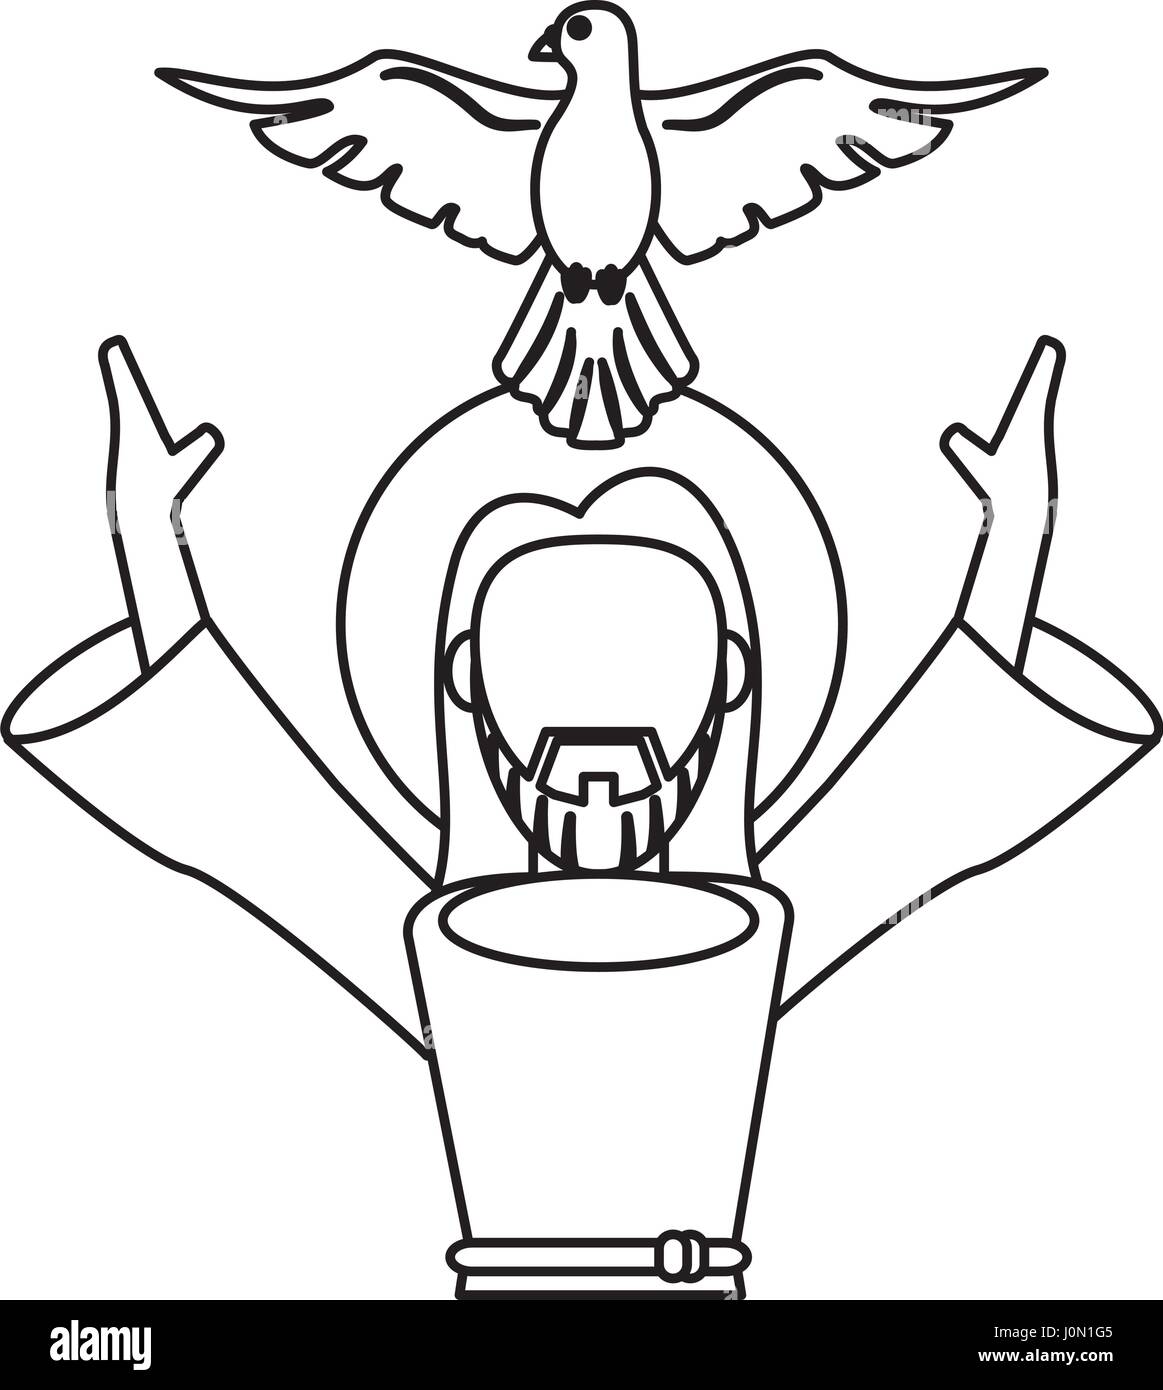 Evangelio De Juan Dibujo Espíritu Santo En El Cristianismo imagen png   imagen transparente descarga gratuita